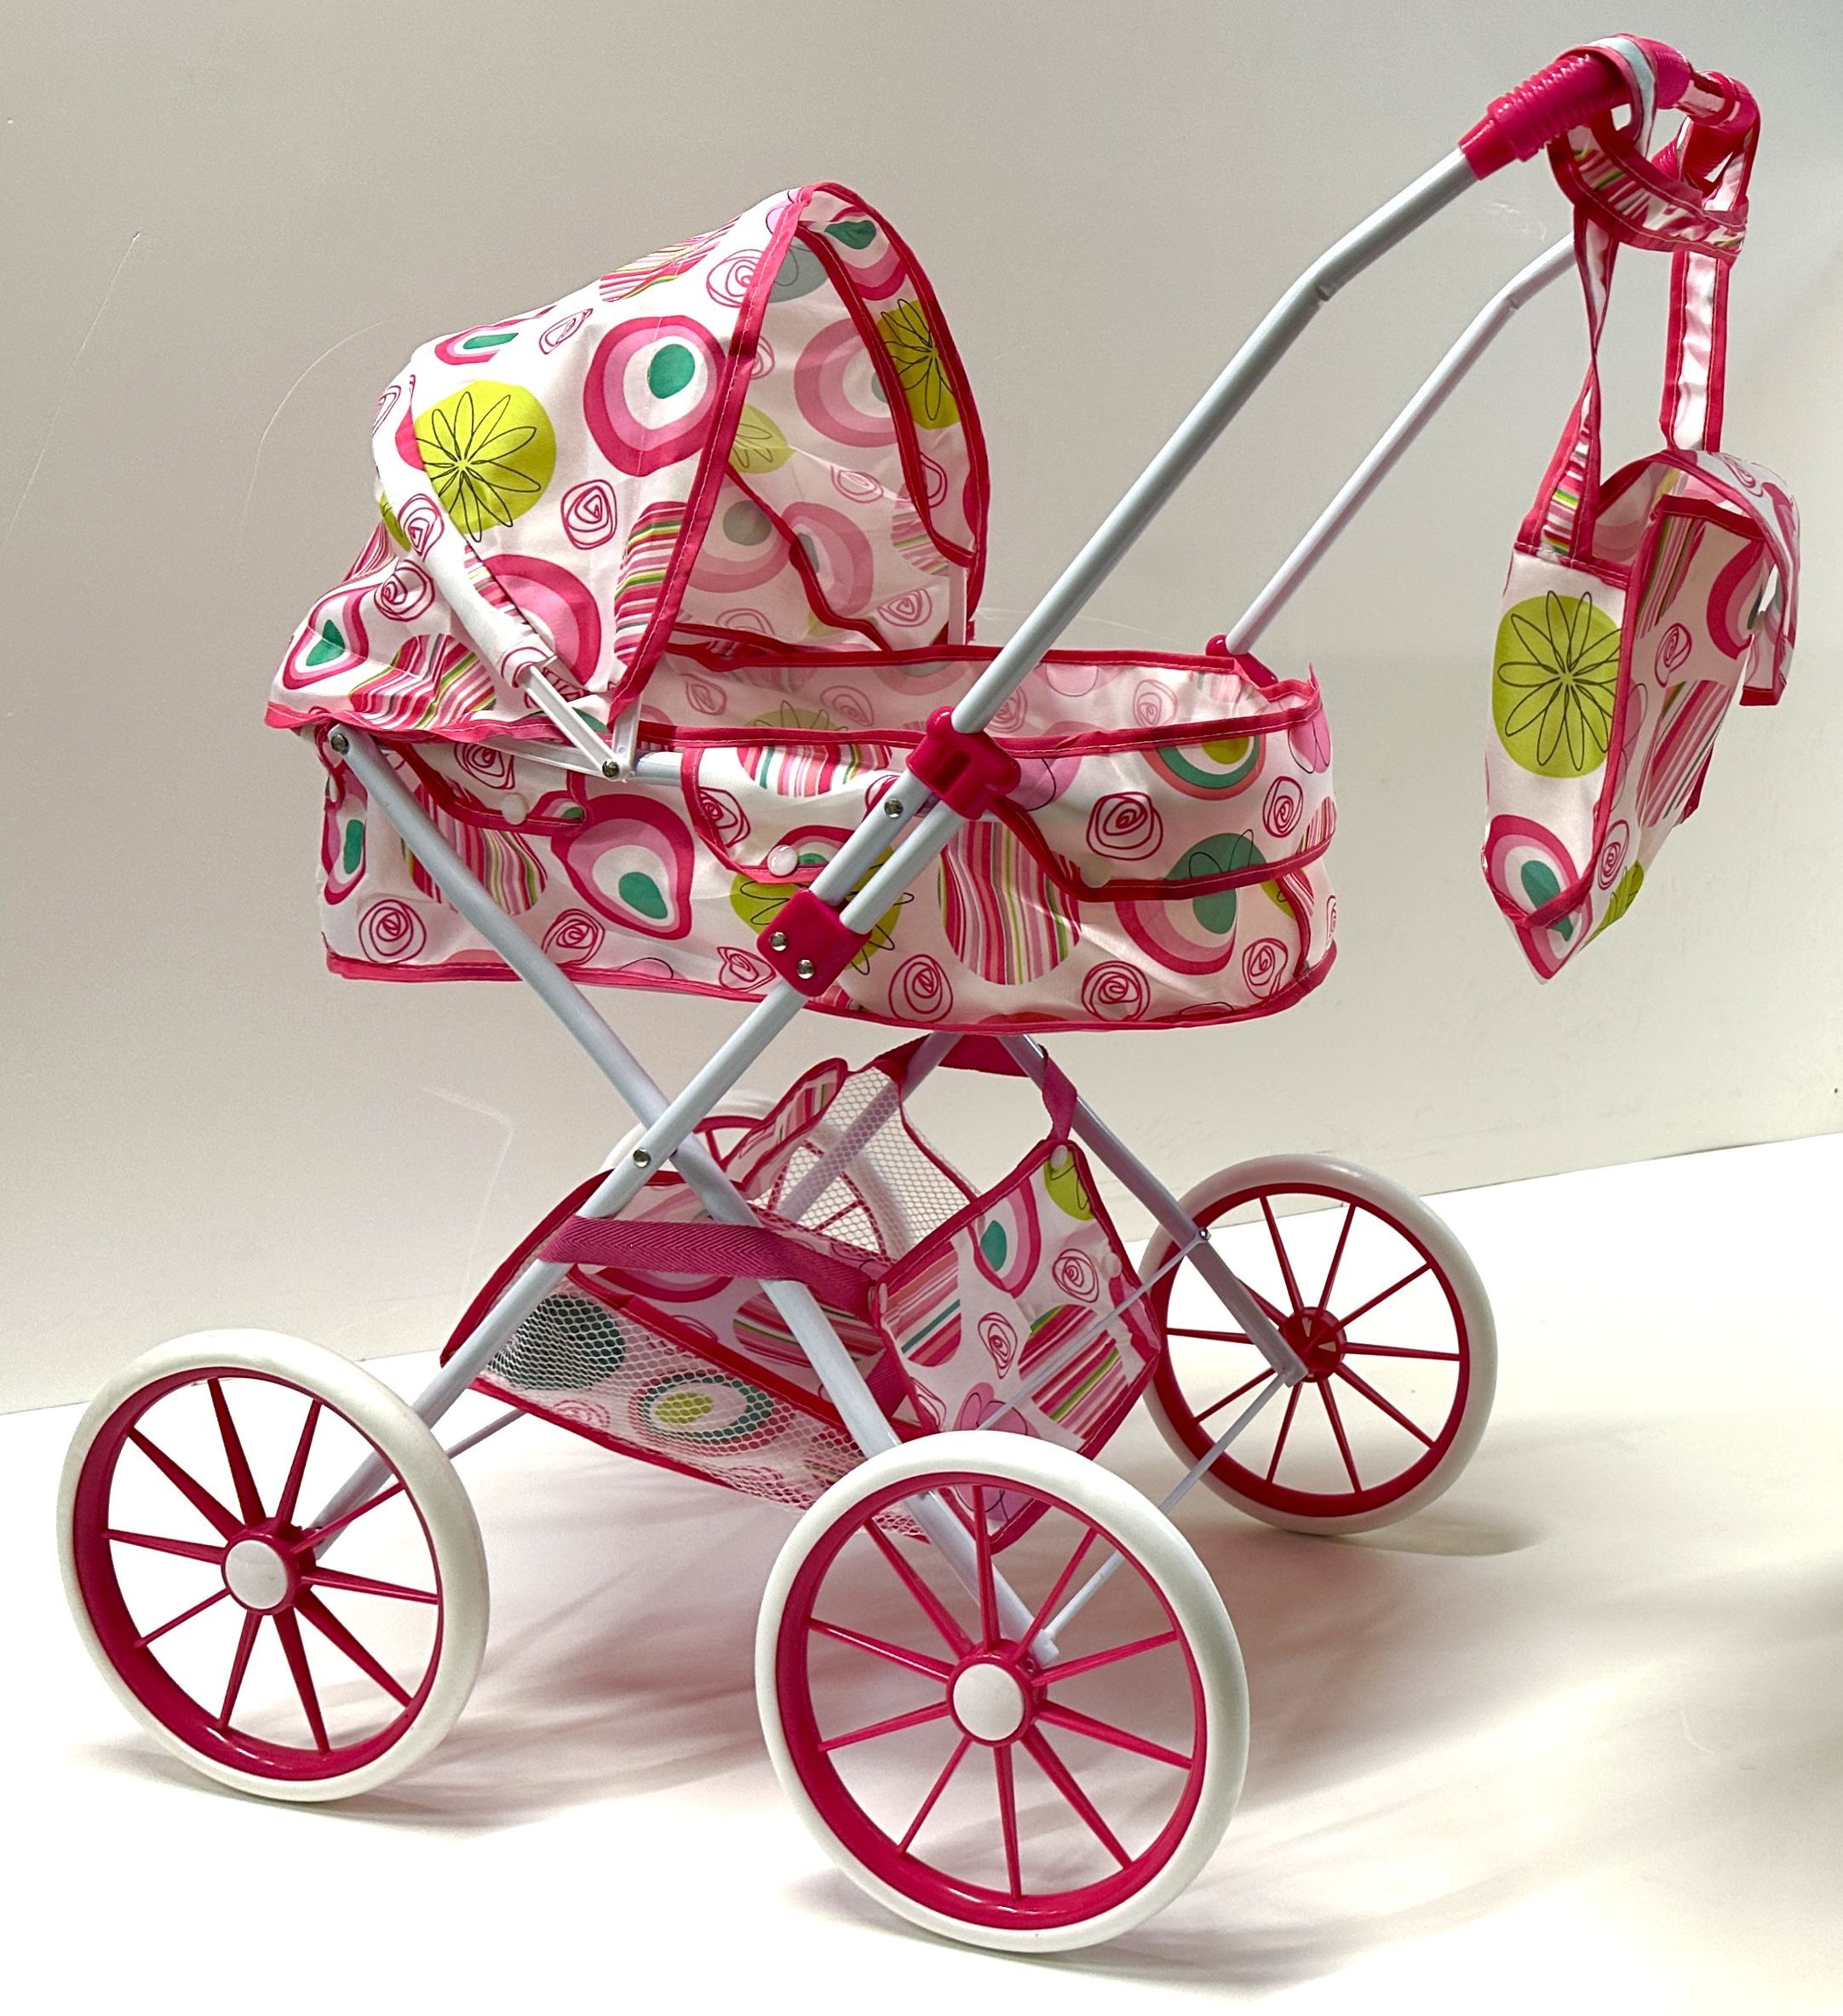 Коляска универсальная для кукол Soni Kids, металлический каркас, корзина, сумка, 72х64х35 коляска трансформер для кукол с люлькой и корзиной металлический складной каркас melobo